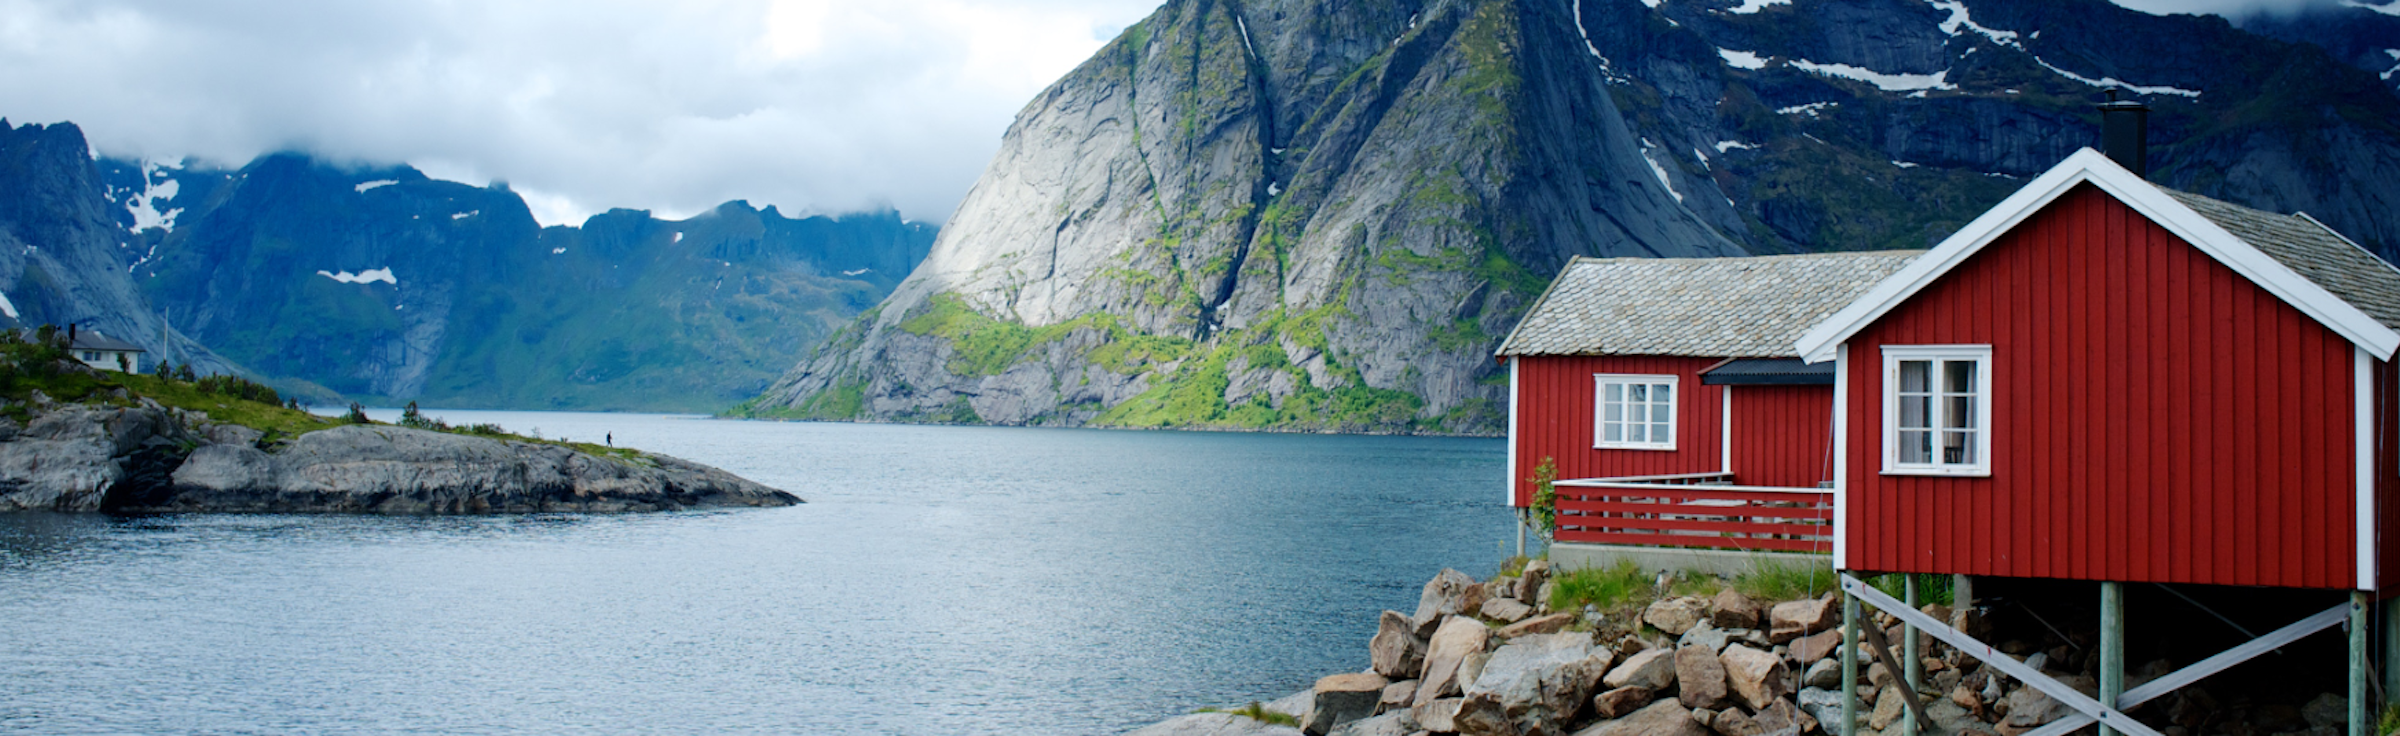 Honeymoon vacations in Norway